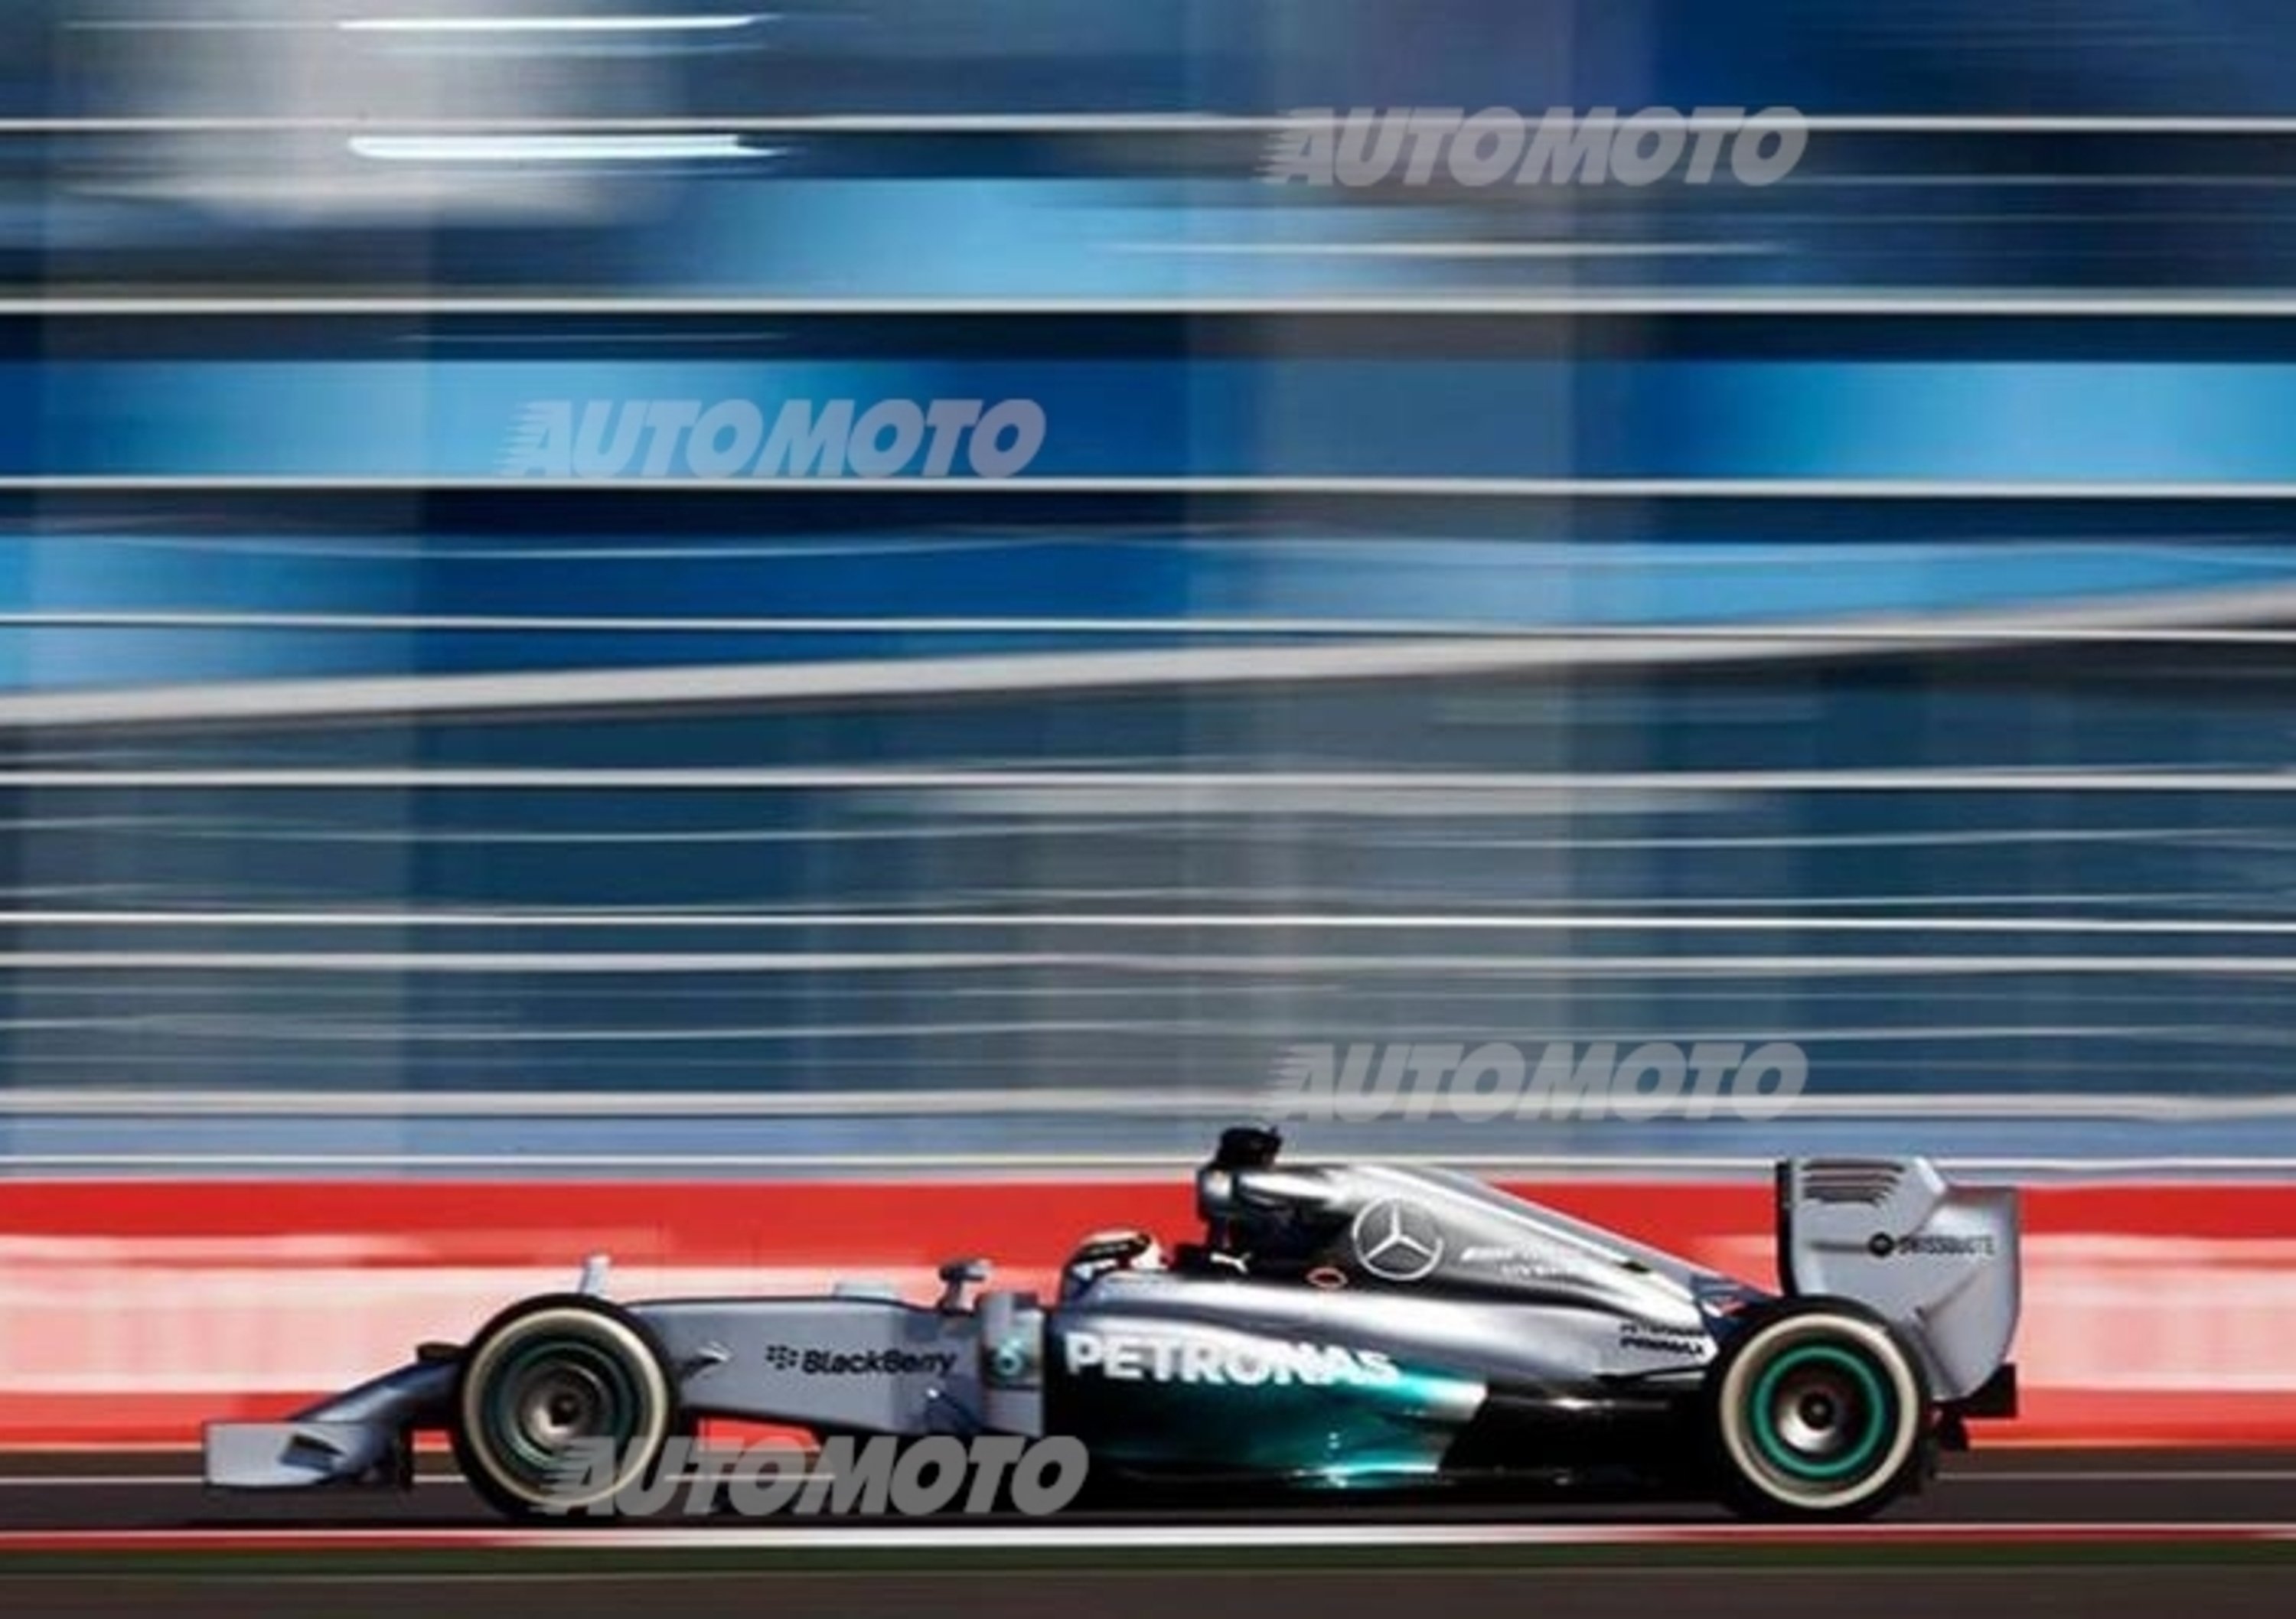 Formula 1 Russia 2014: Hamilton domina, rimonta strepitosa per Rosberg